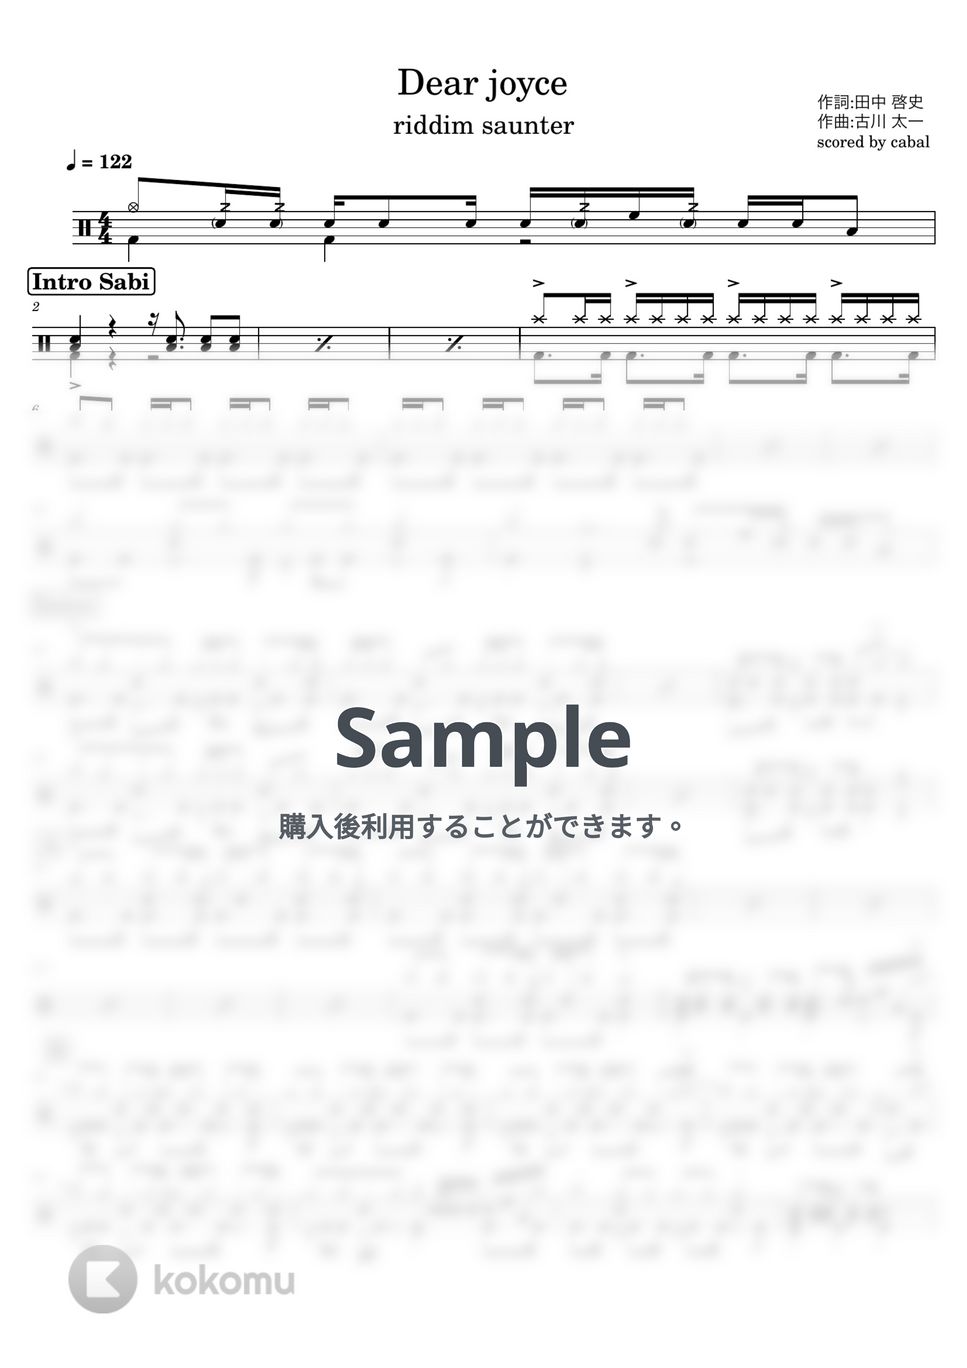 riddim saunter - Dear joyce (ドラム譜面) by cabal